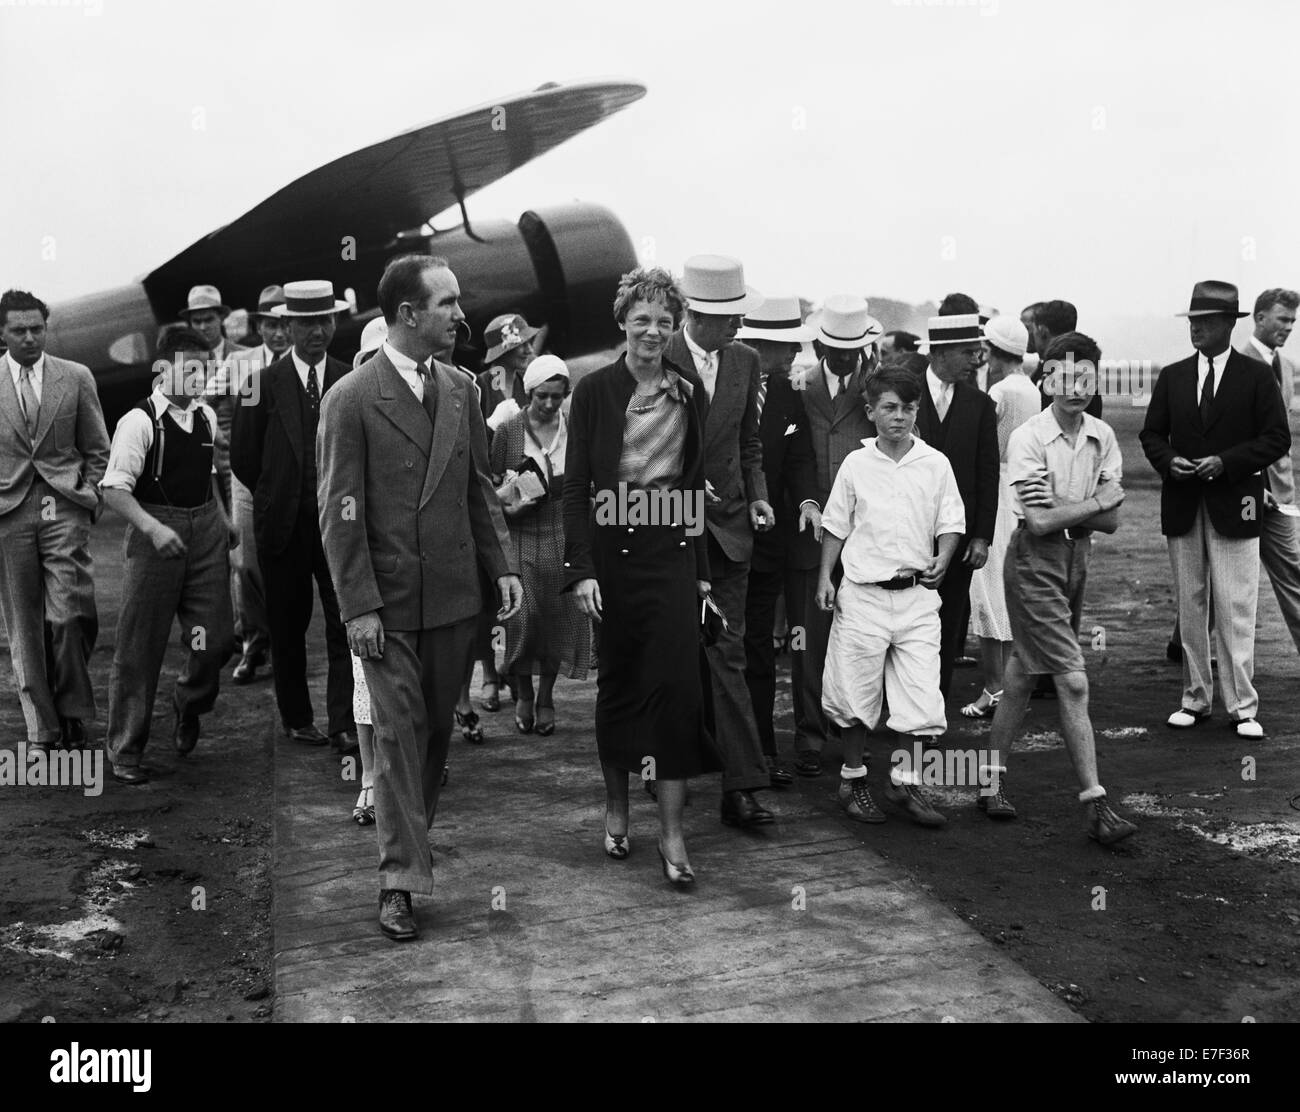 Photo d'époque de la pionnière et auteure de l'aviation américaine Amelia Earhart (1897 – déclarée morte en 1939) – Earhart et son navigateur Fred Noonan ont connu une célèbre disparition en 1937 alors qu'elle essayait de devenir la première femme à effectuer un vol de navigation du globe. Photo de Harris & Ewing prise en 1932. Banque D'Images